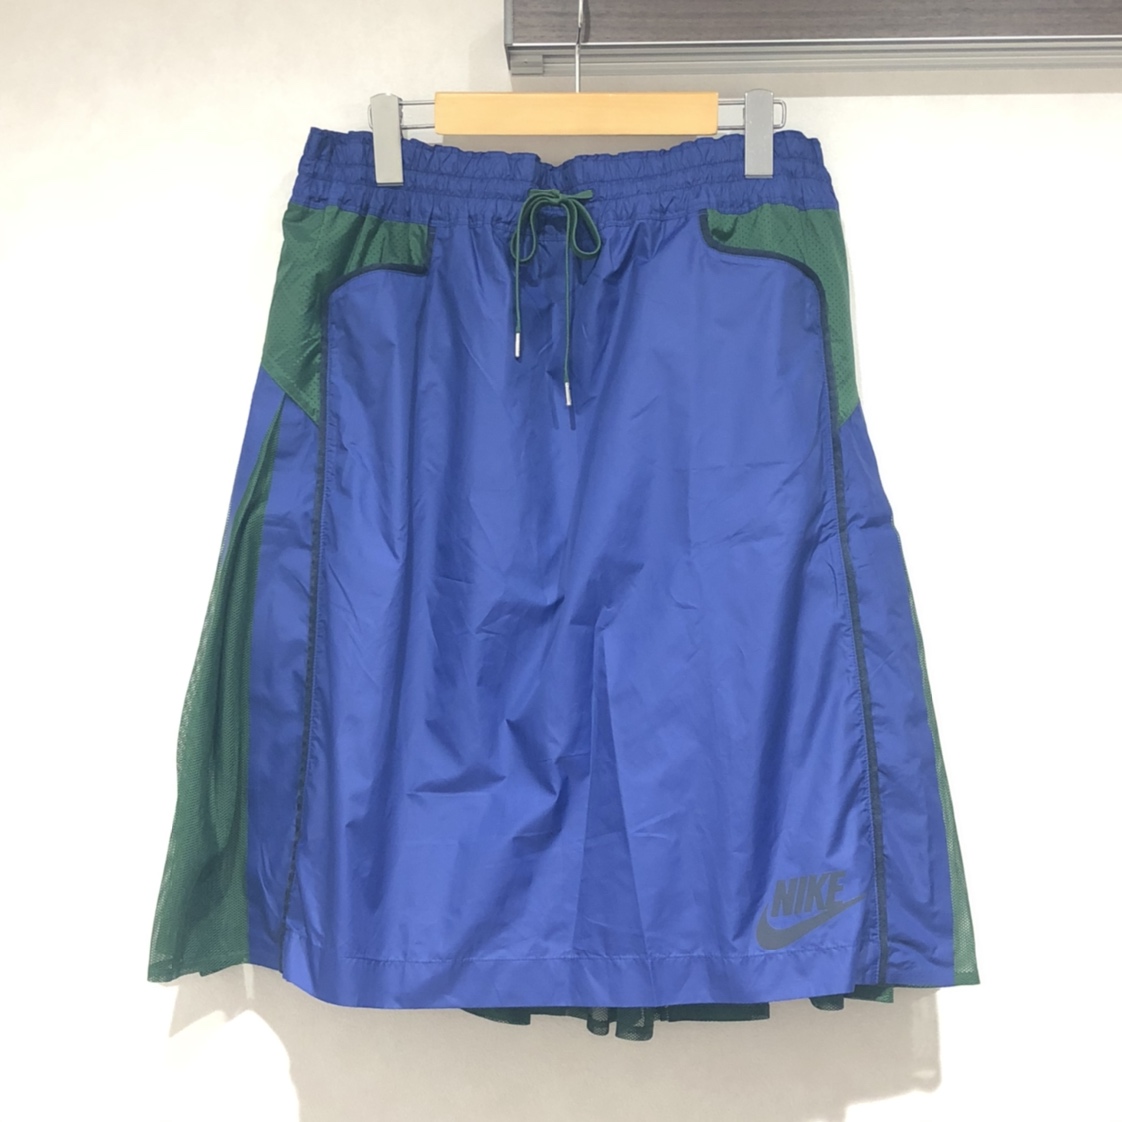 ナイキの×サカイ ブルー×グリーン  Sports Womens Skirtの買取実績です。